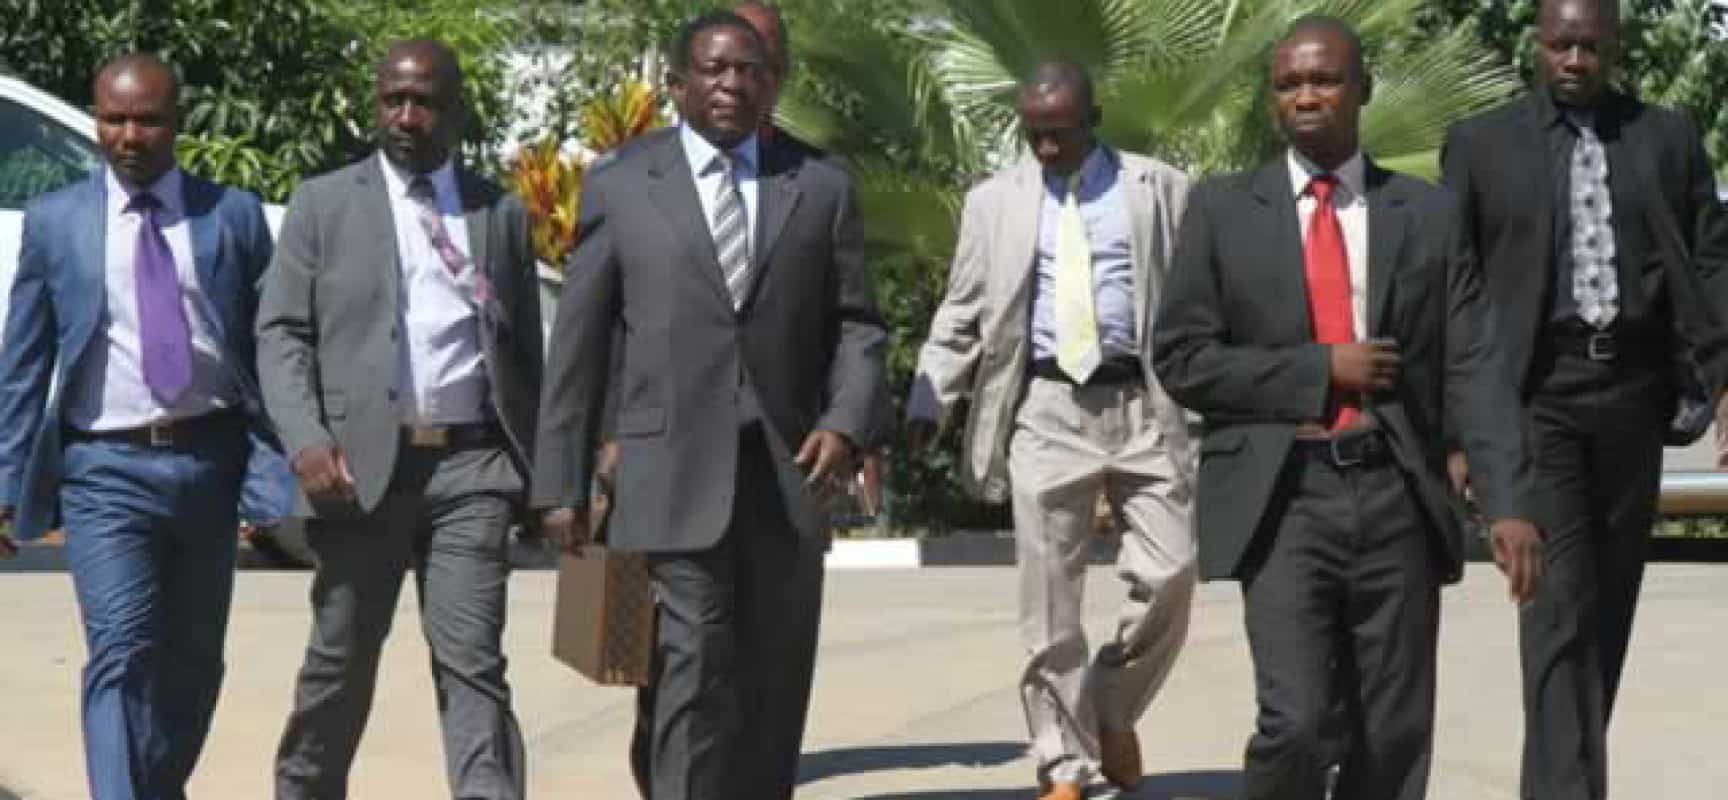 Softman Mnangagwa: Confrontation would make enemies think twice